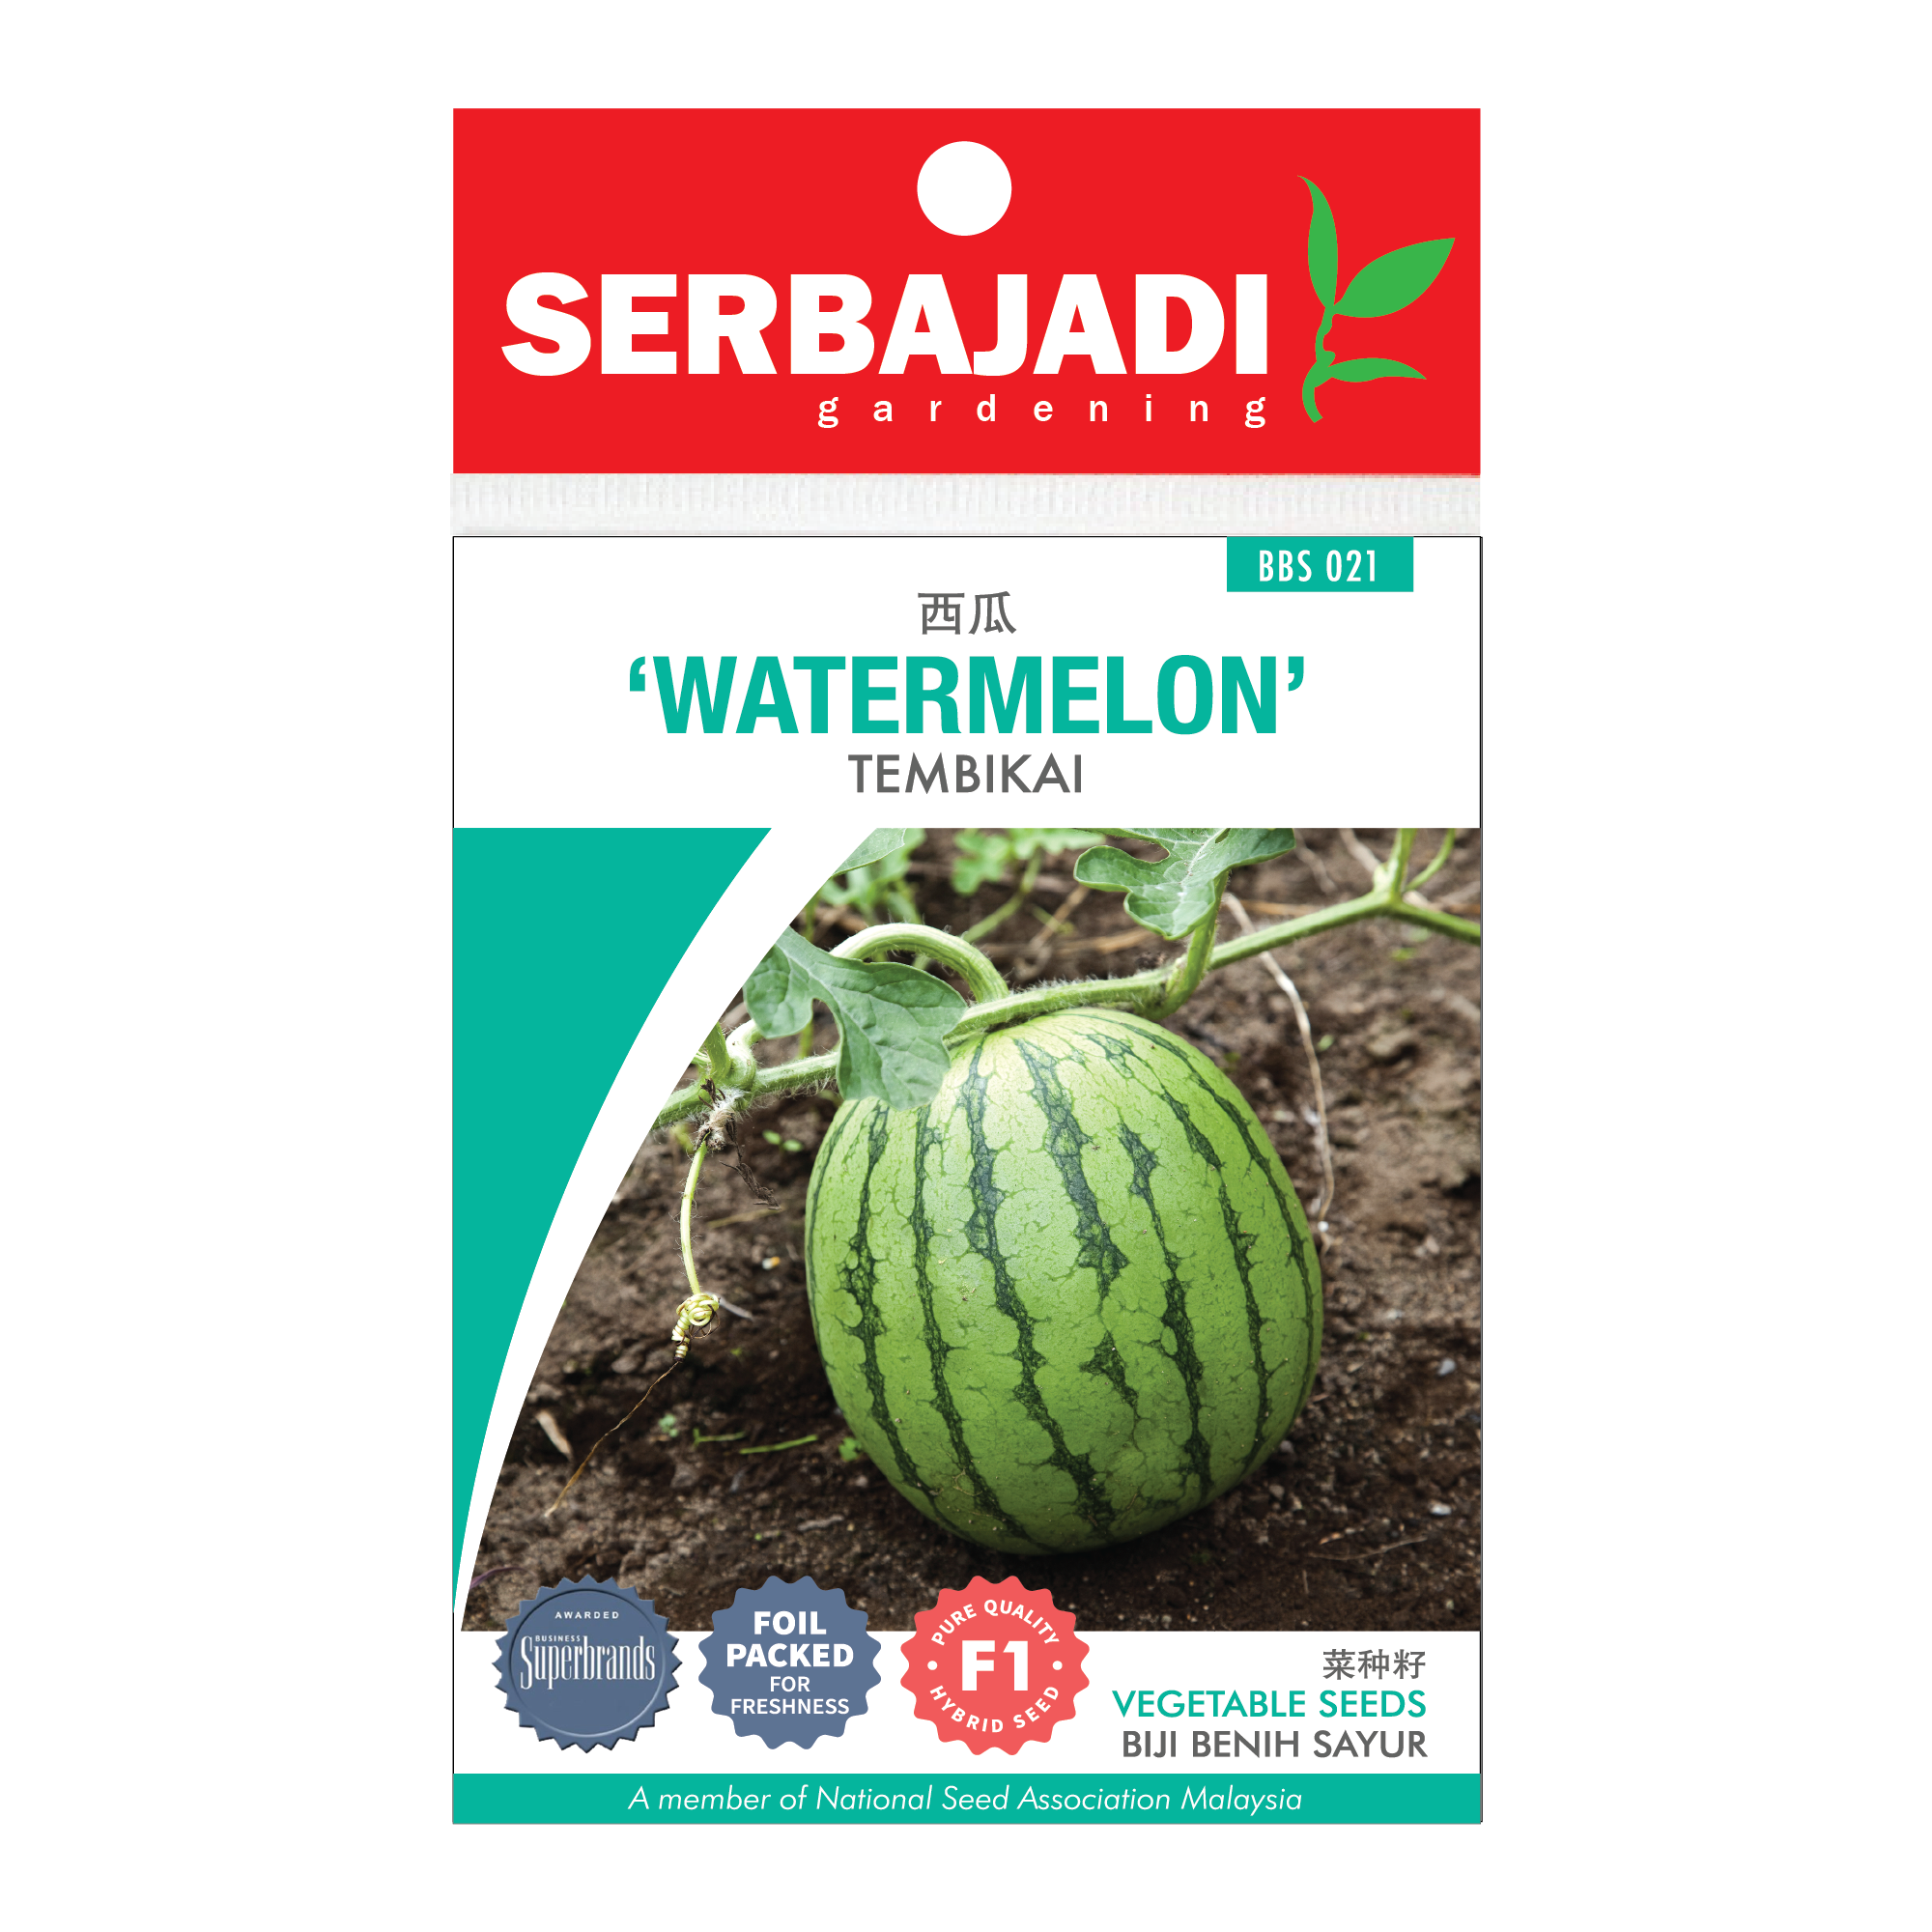 Serbajadi watermelon seeds